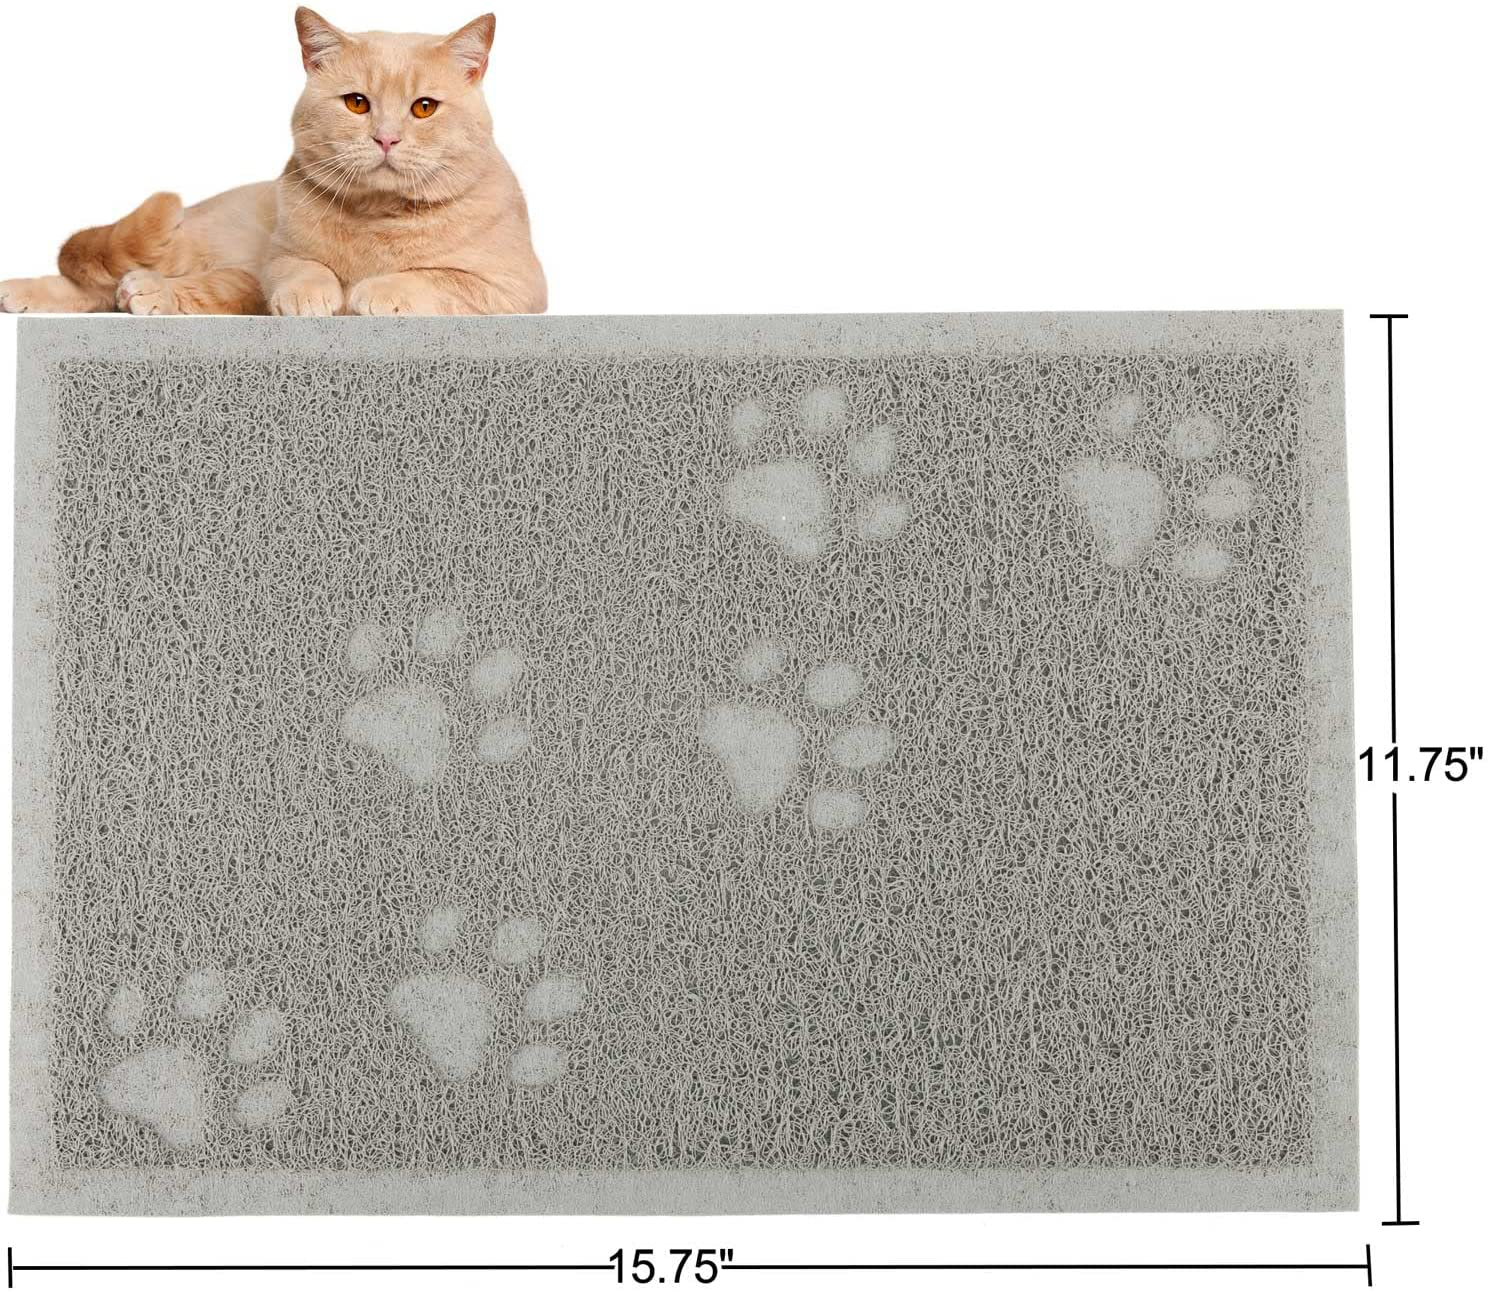 URDOGSL Cat Litter Mat, Premium Durable Cat Litter Trapping Mat for Li –  KOL PET